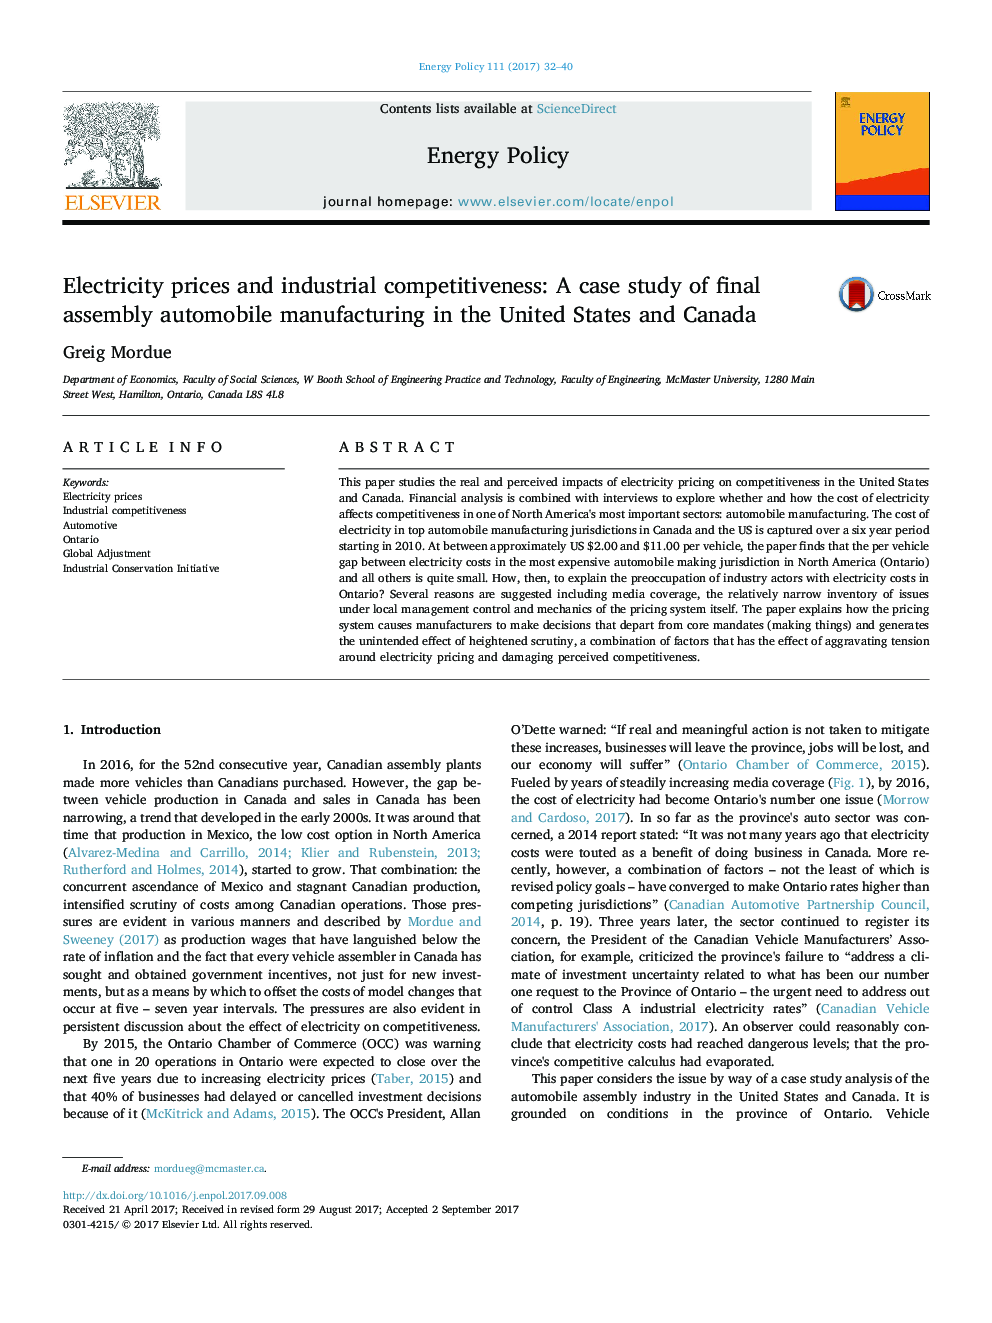 قیمت برق و رقابت صنعتی: مطالعه موردی تولید نهایی وسایل نقلیه مونتاژ در ایالات متحده و کانادا 